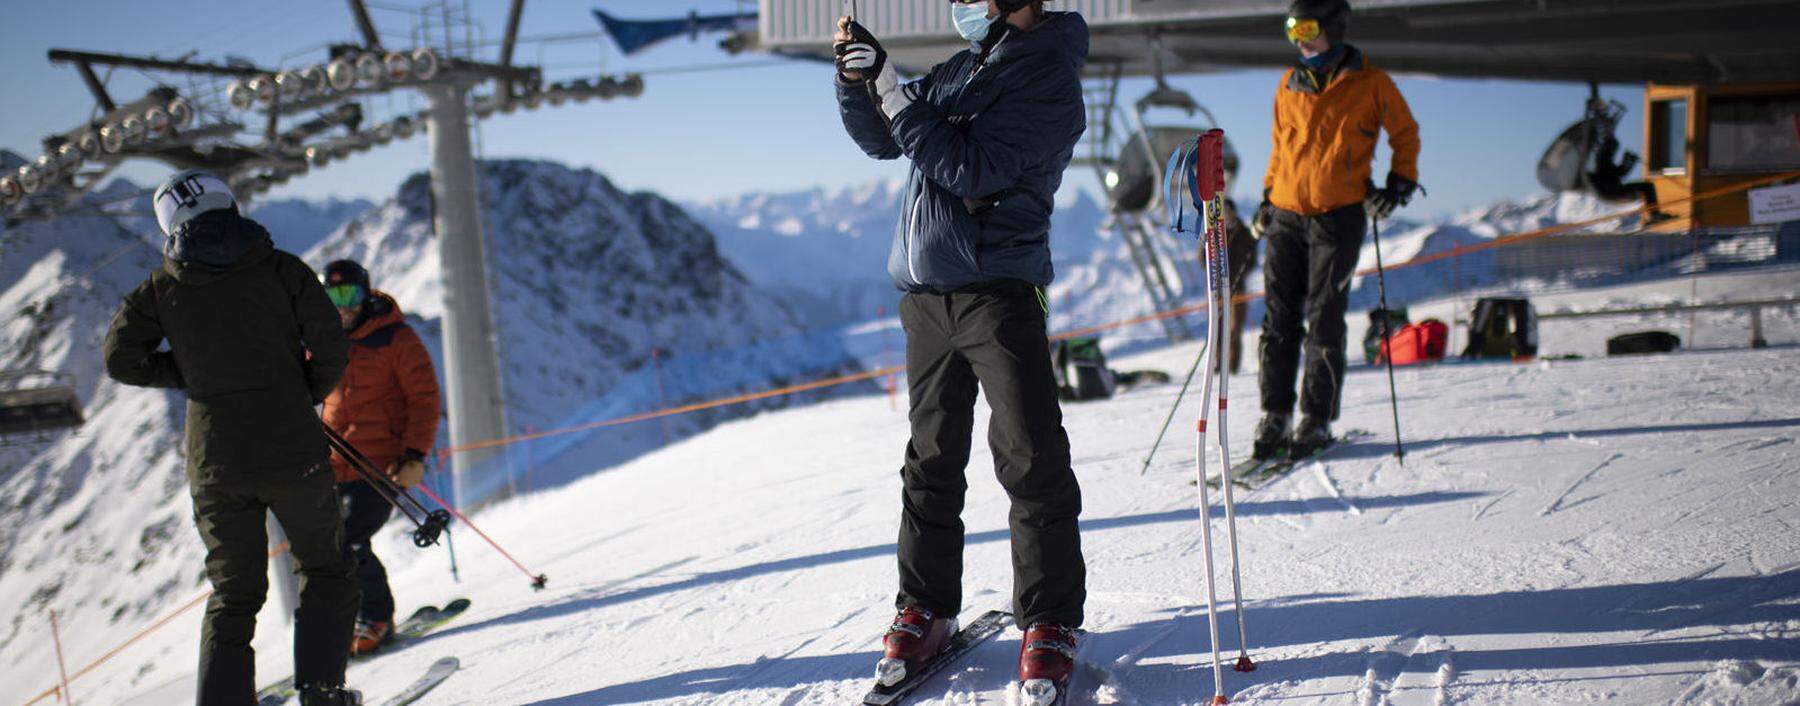 Die Skigebiete etwa in Davos können sich trotz Pandemie nicht über fehlende Gäste beklagen.